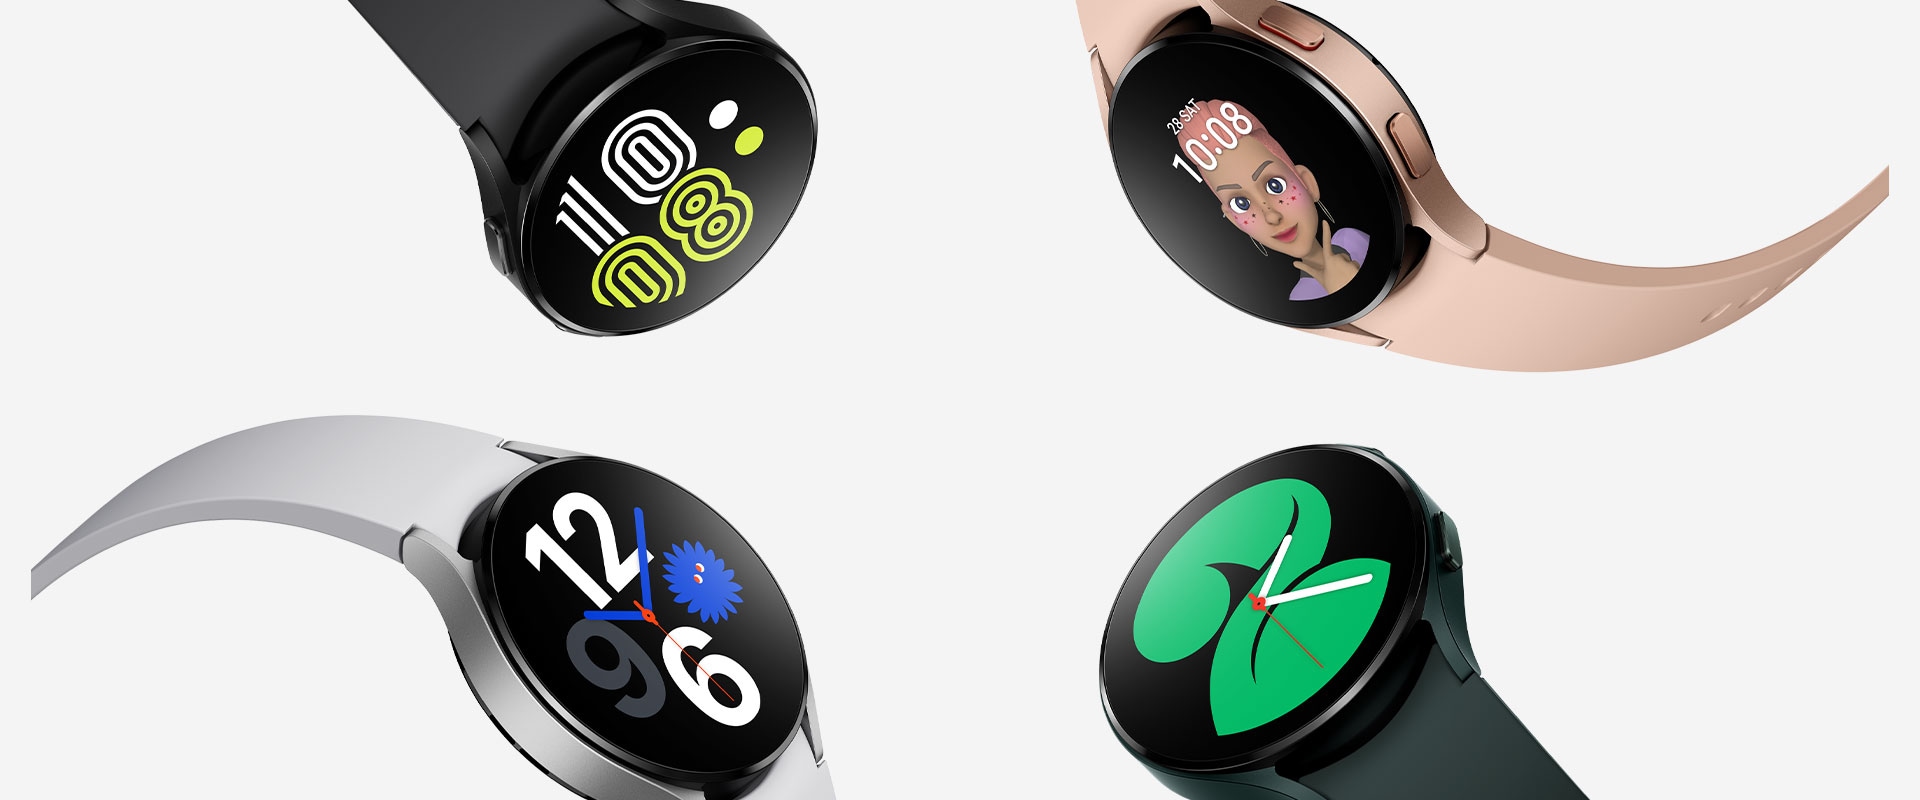 Cuatro Galaxy Watch4 están agrupados, y cada reloj destaca diferentes estilos de esferas del reloj para indicar la hora. Cada reloj tiene un color diferente, como negro, oro rosado, verde y plateado.